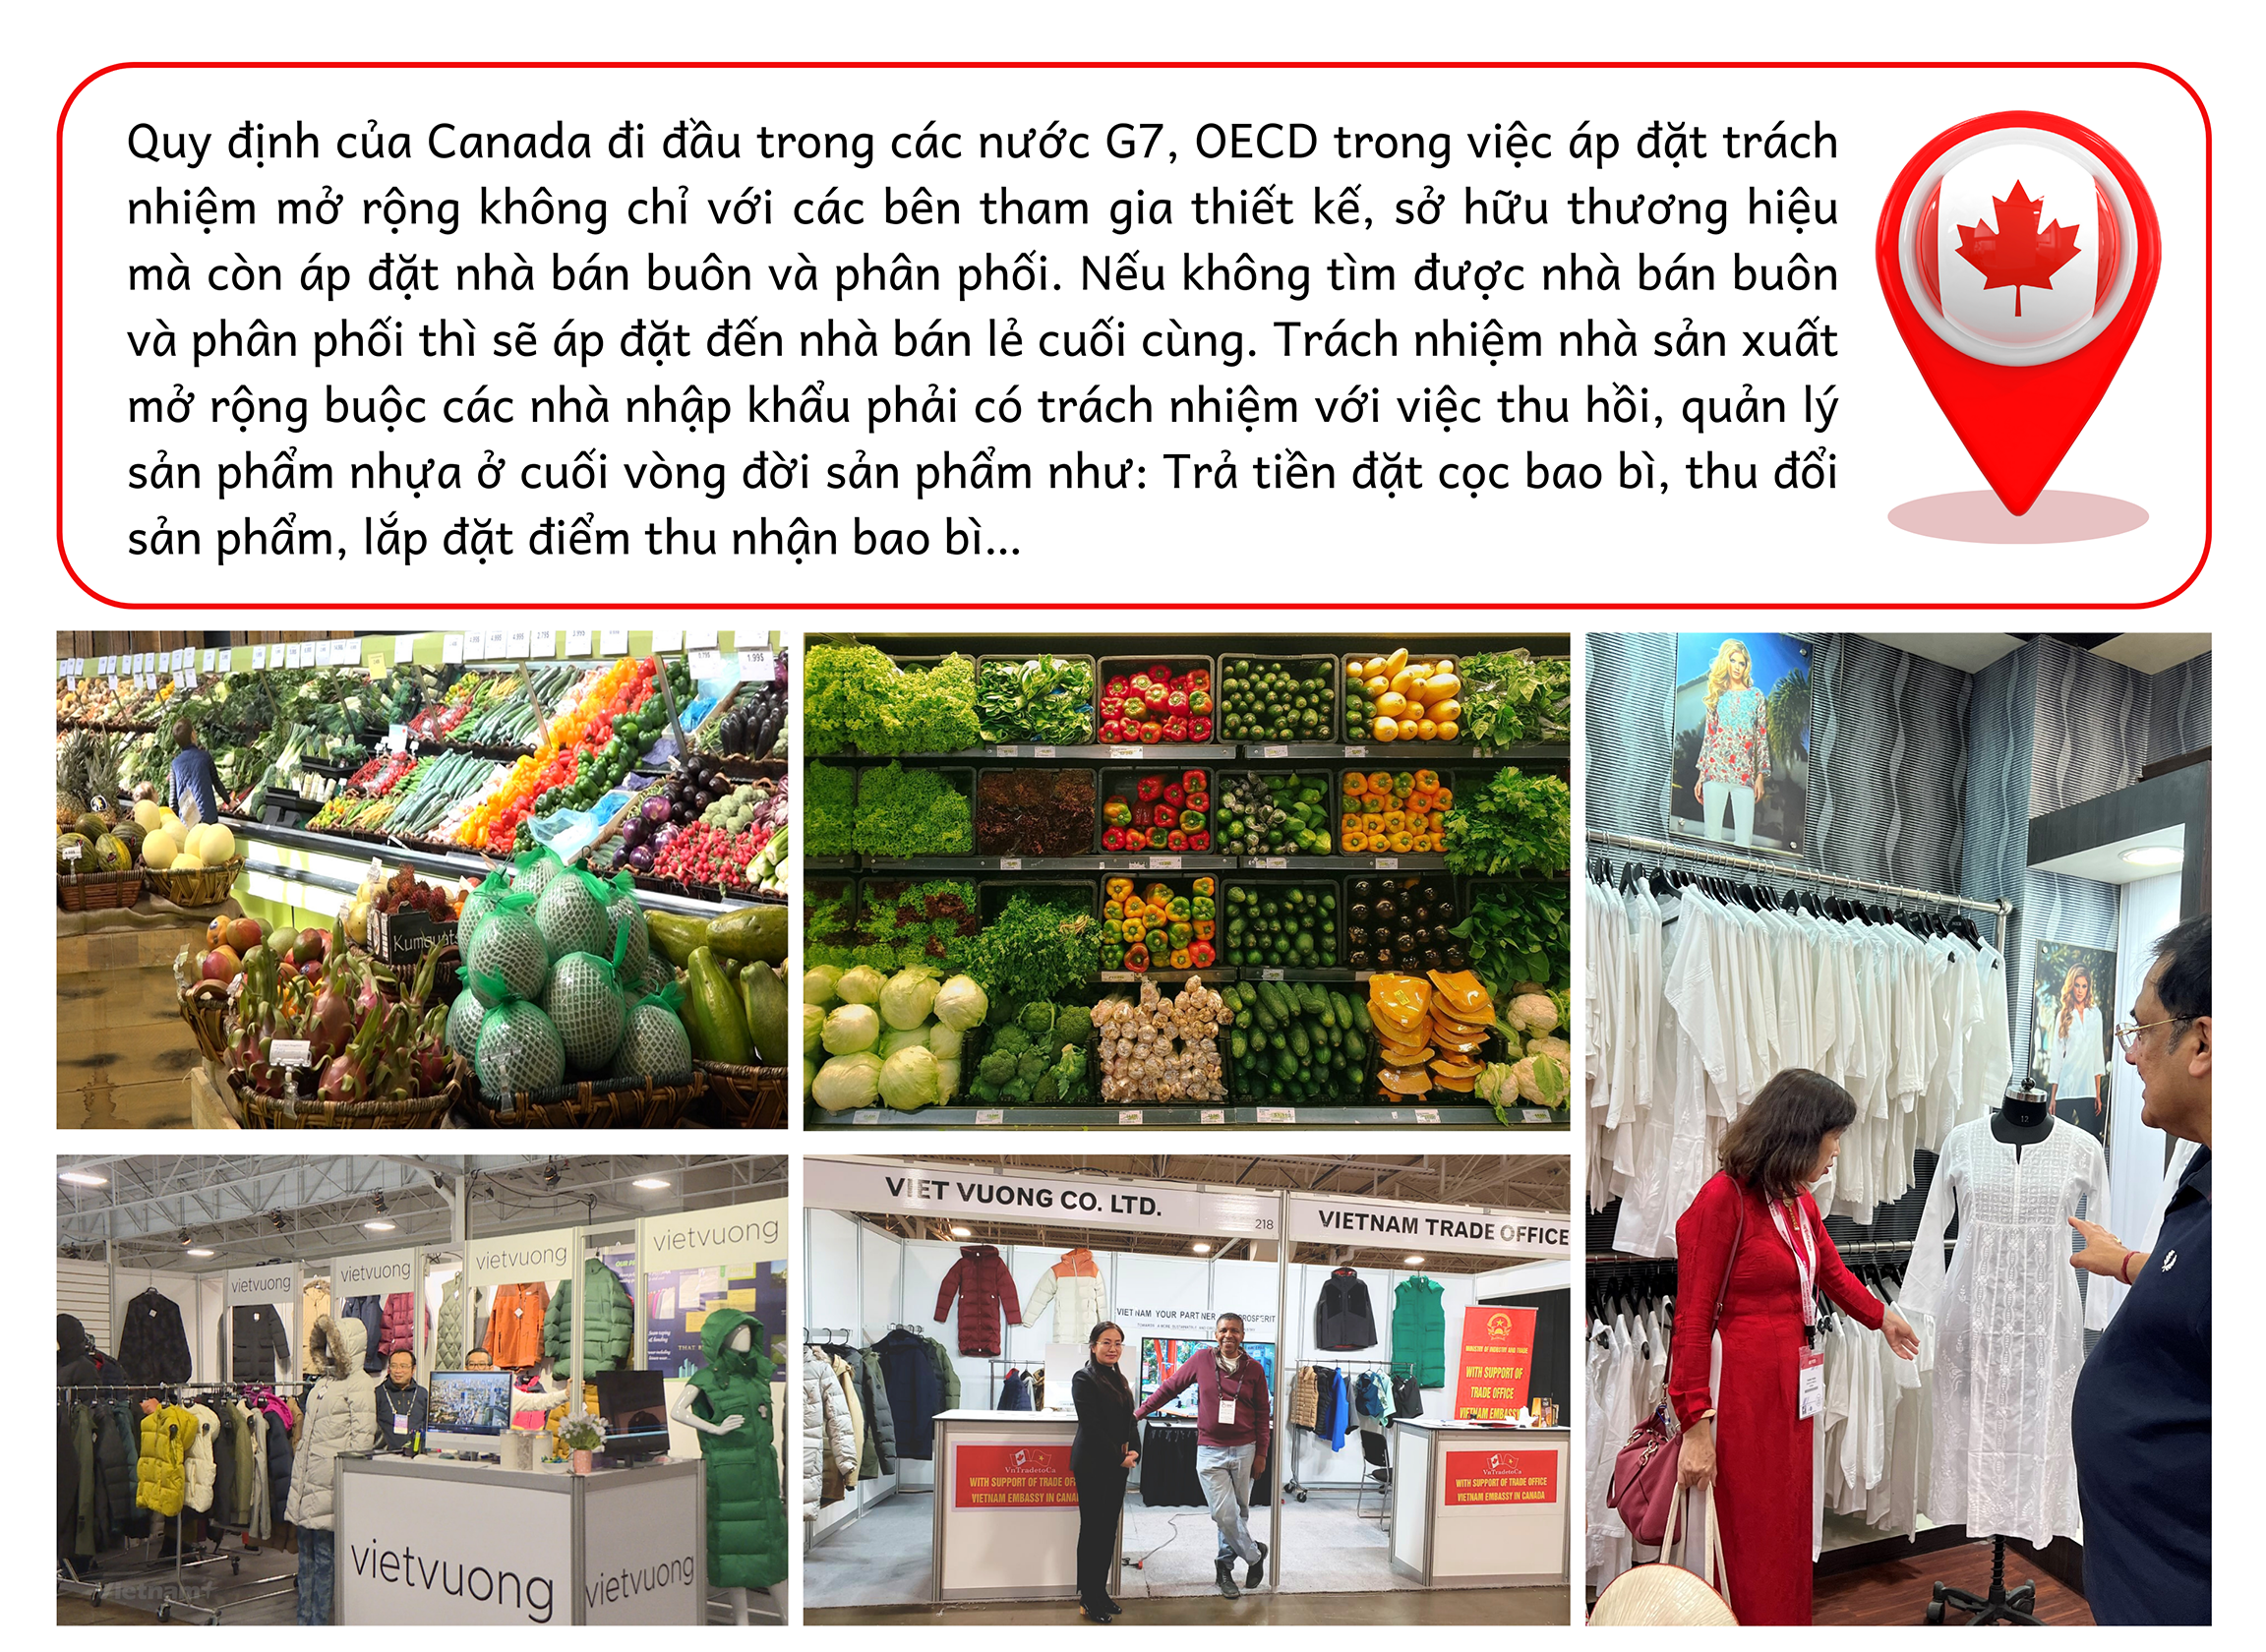 Longform | Những “sứ giả kinh tế” làm rạng danh hàng hoá, thương hiệu Việt trên thế giới